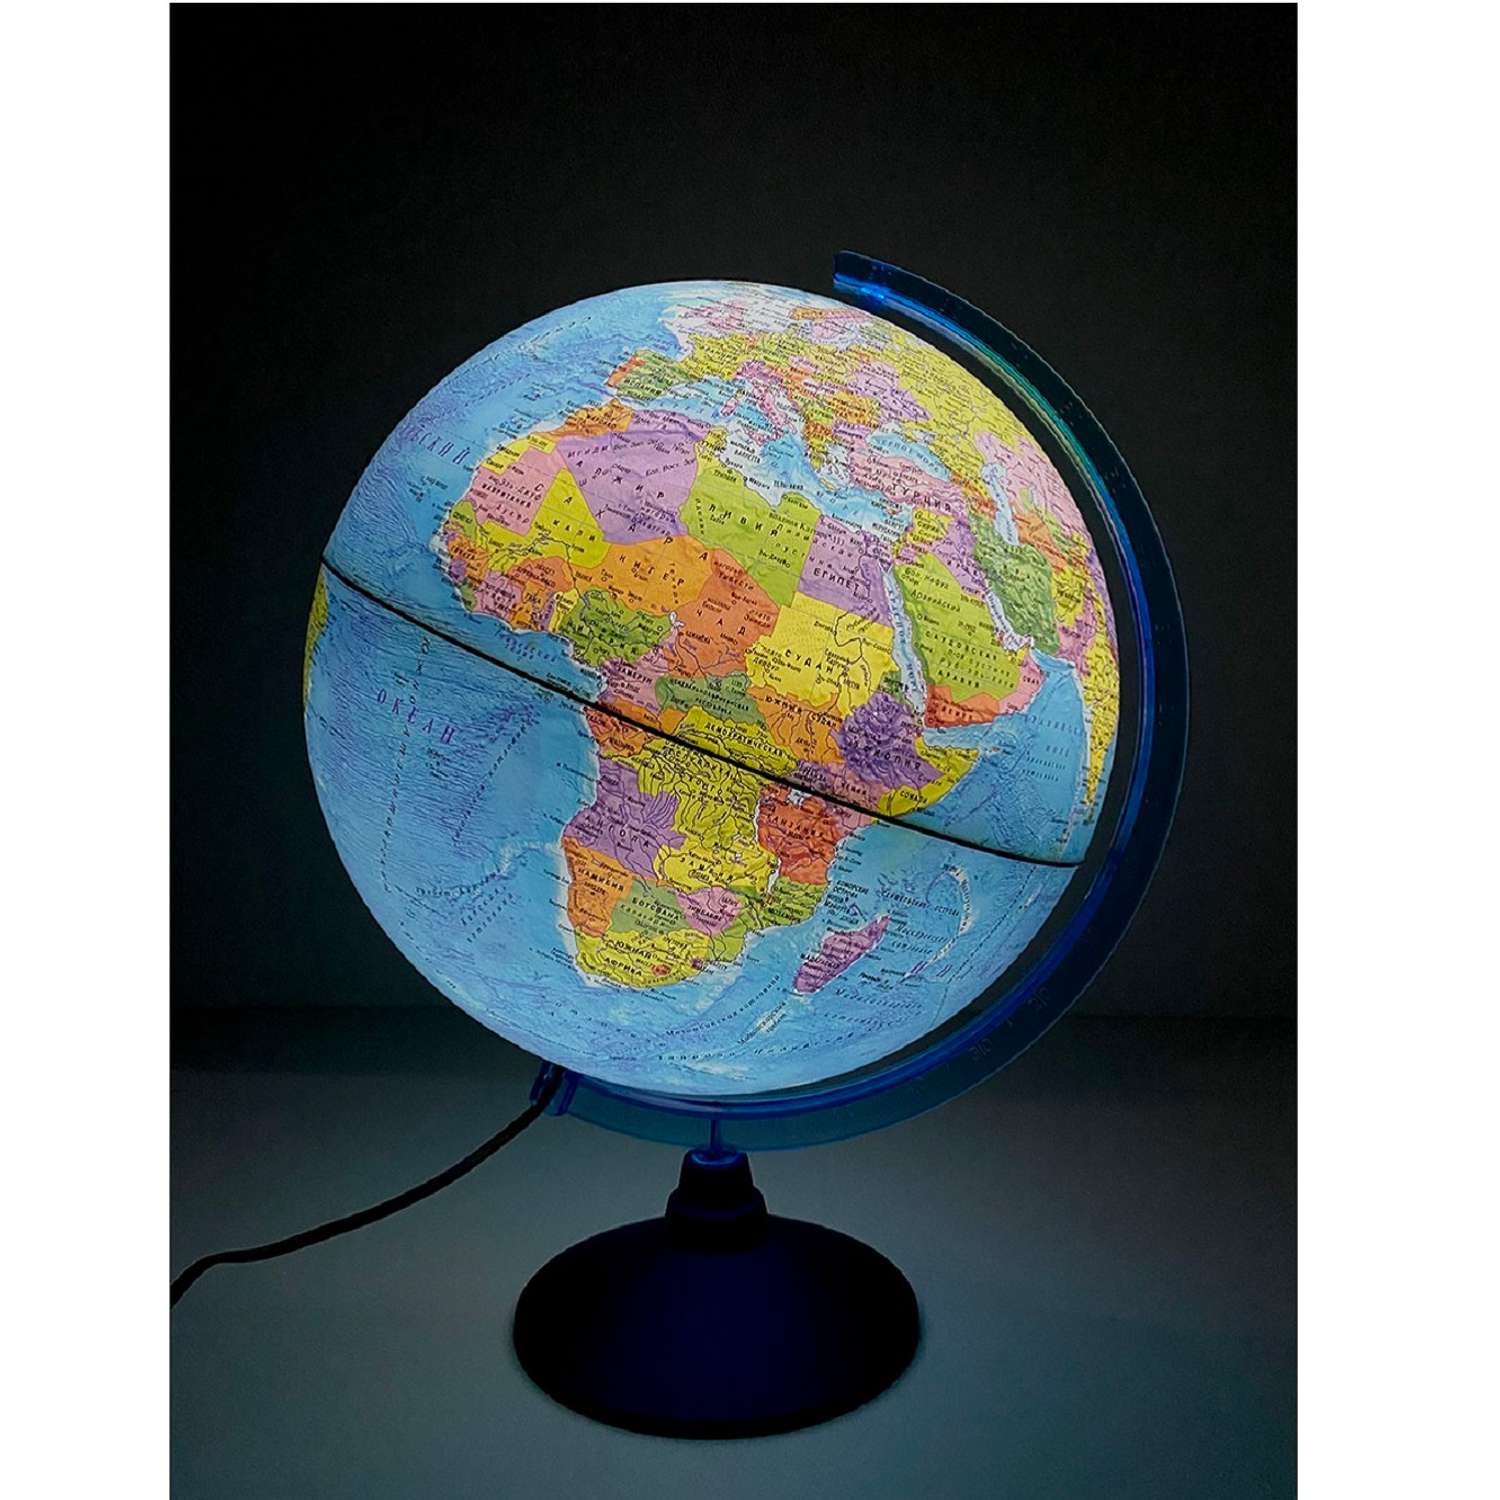 Как сделать глобус из пластилина своими руками: мастерим модель Земли с детьми